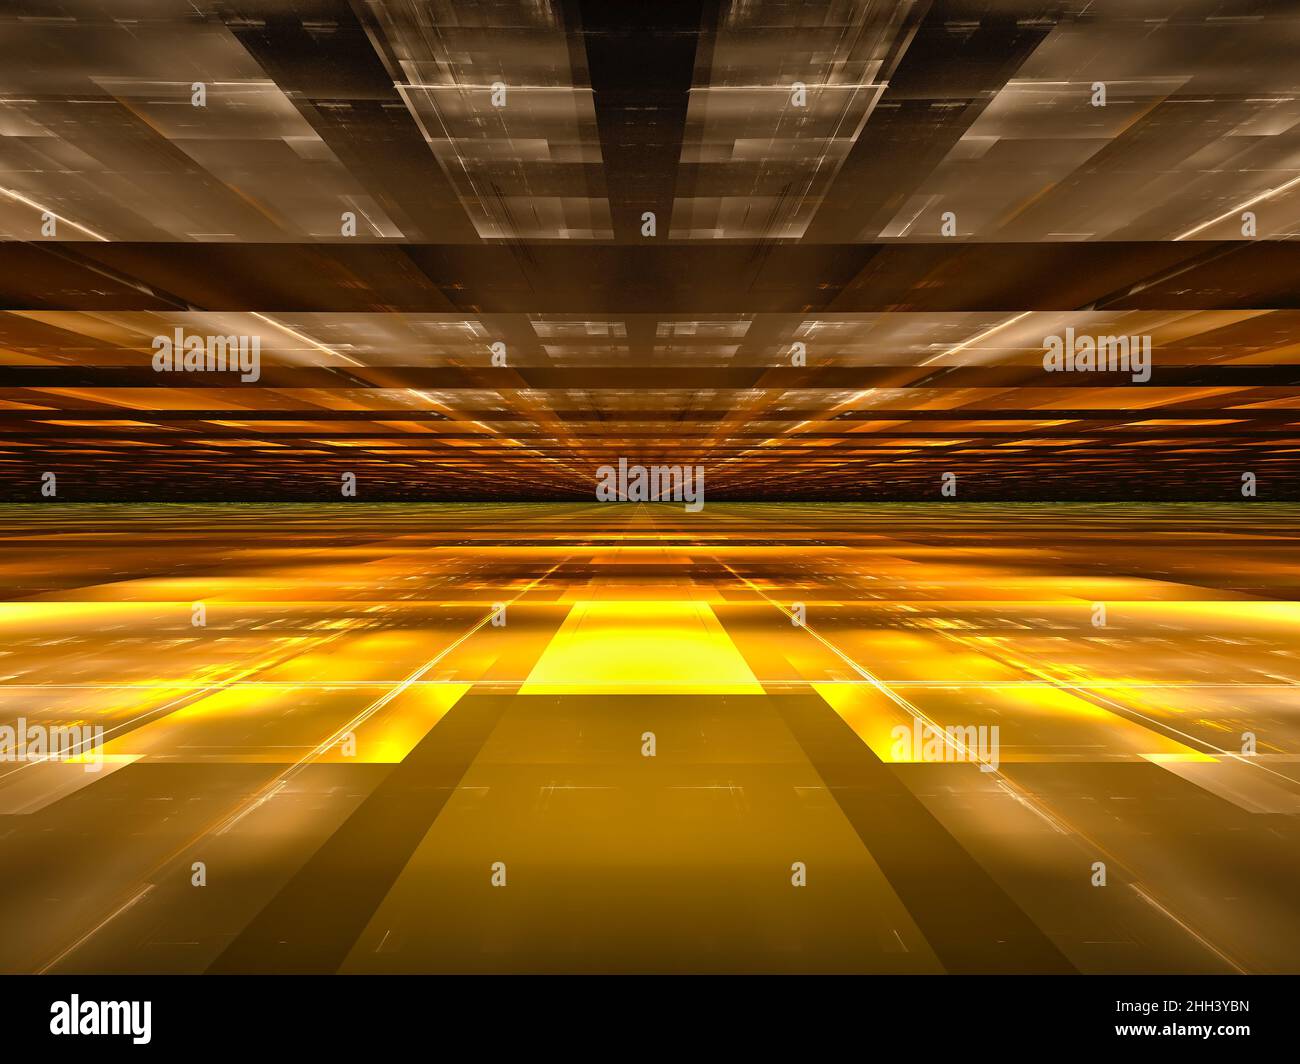 Arrière-plan doré simple avec effet perspective - illustration abstraite 3D Banque D'Images